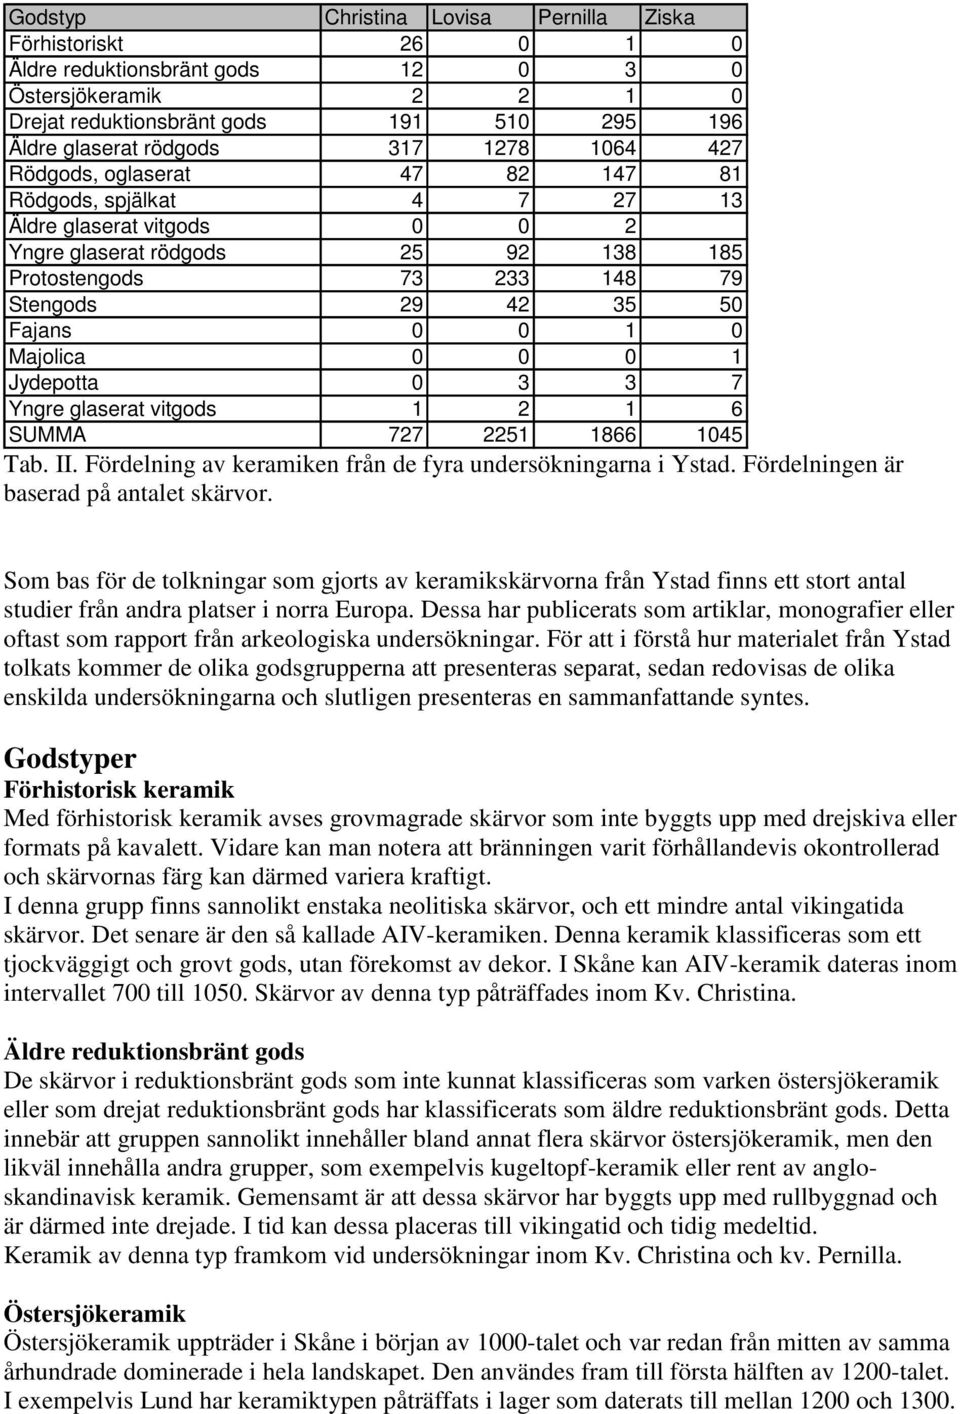 Majolica 0 0 0 1 Jydepotta 0 3 3 7 Yngre glaserat vitgods 1 2 1 6 SUMMA 727 2251 1866 1045 Tab. II. Fördelning av keramiken från de fyra undersökningarna i Ystad.